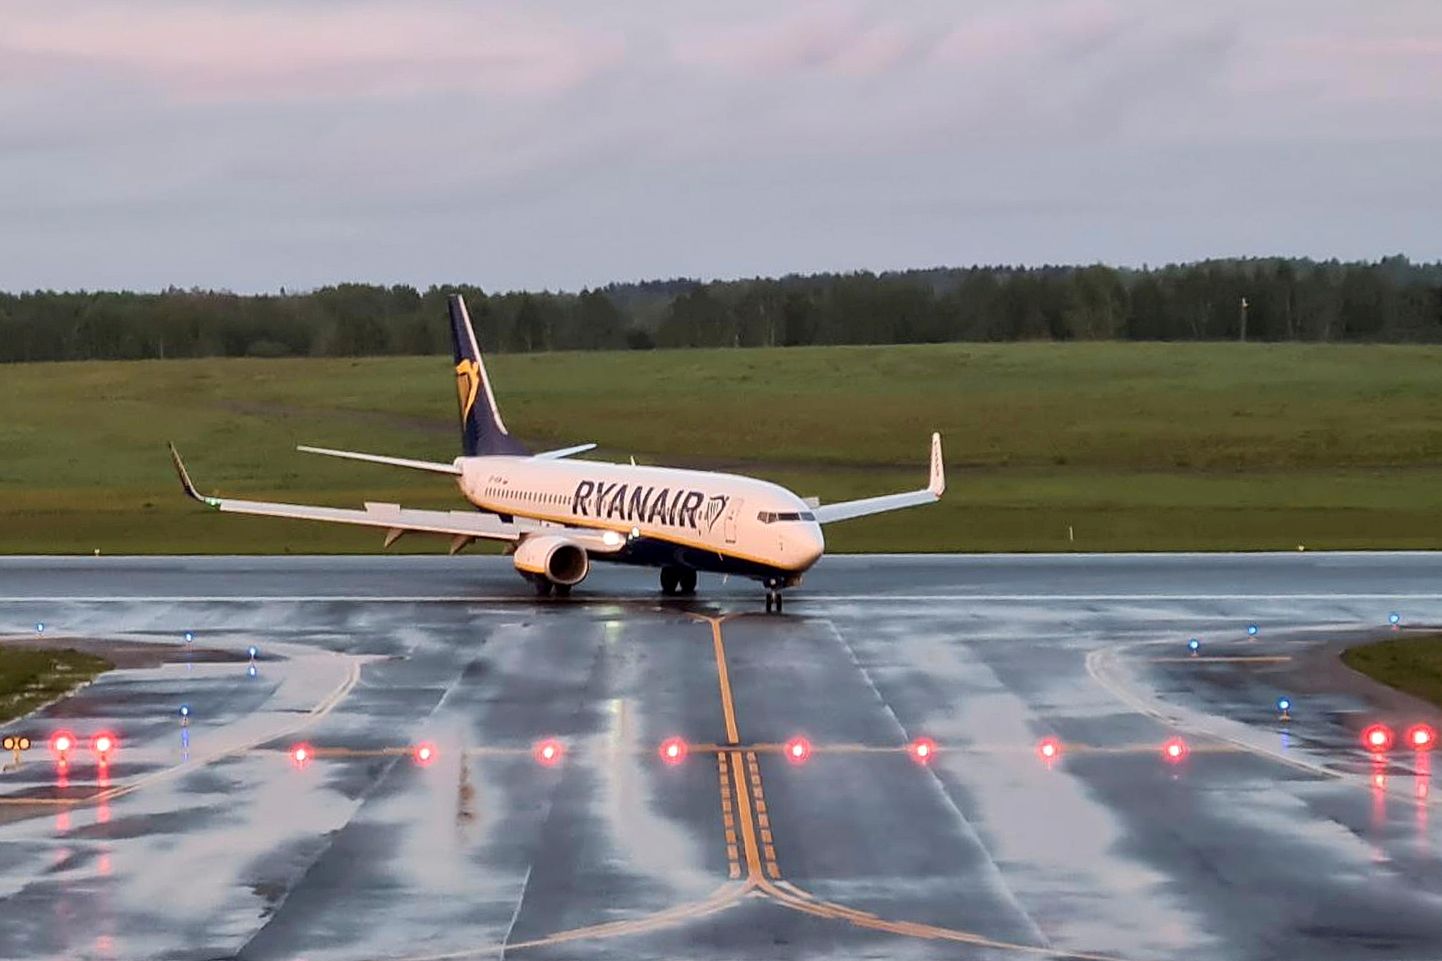 Ryanairi lennuk, mille sunnitud maandumine Minskis, toob Valgevenele kaasa uued ELi sanktsioonid.